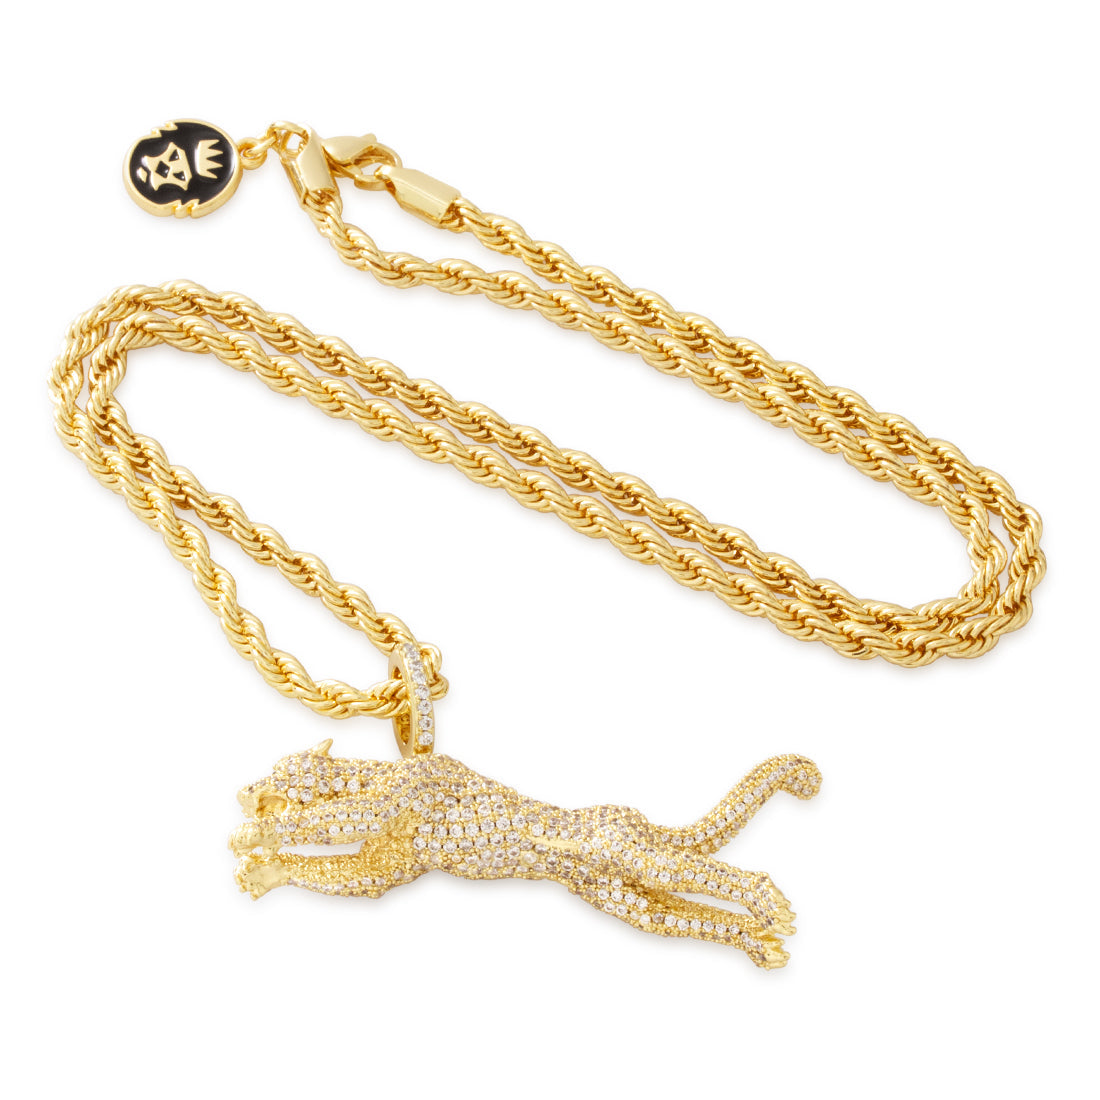 Jaguar Necklace